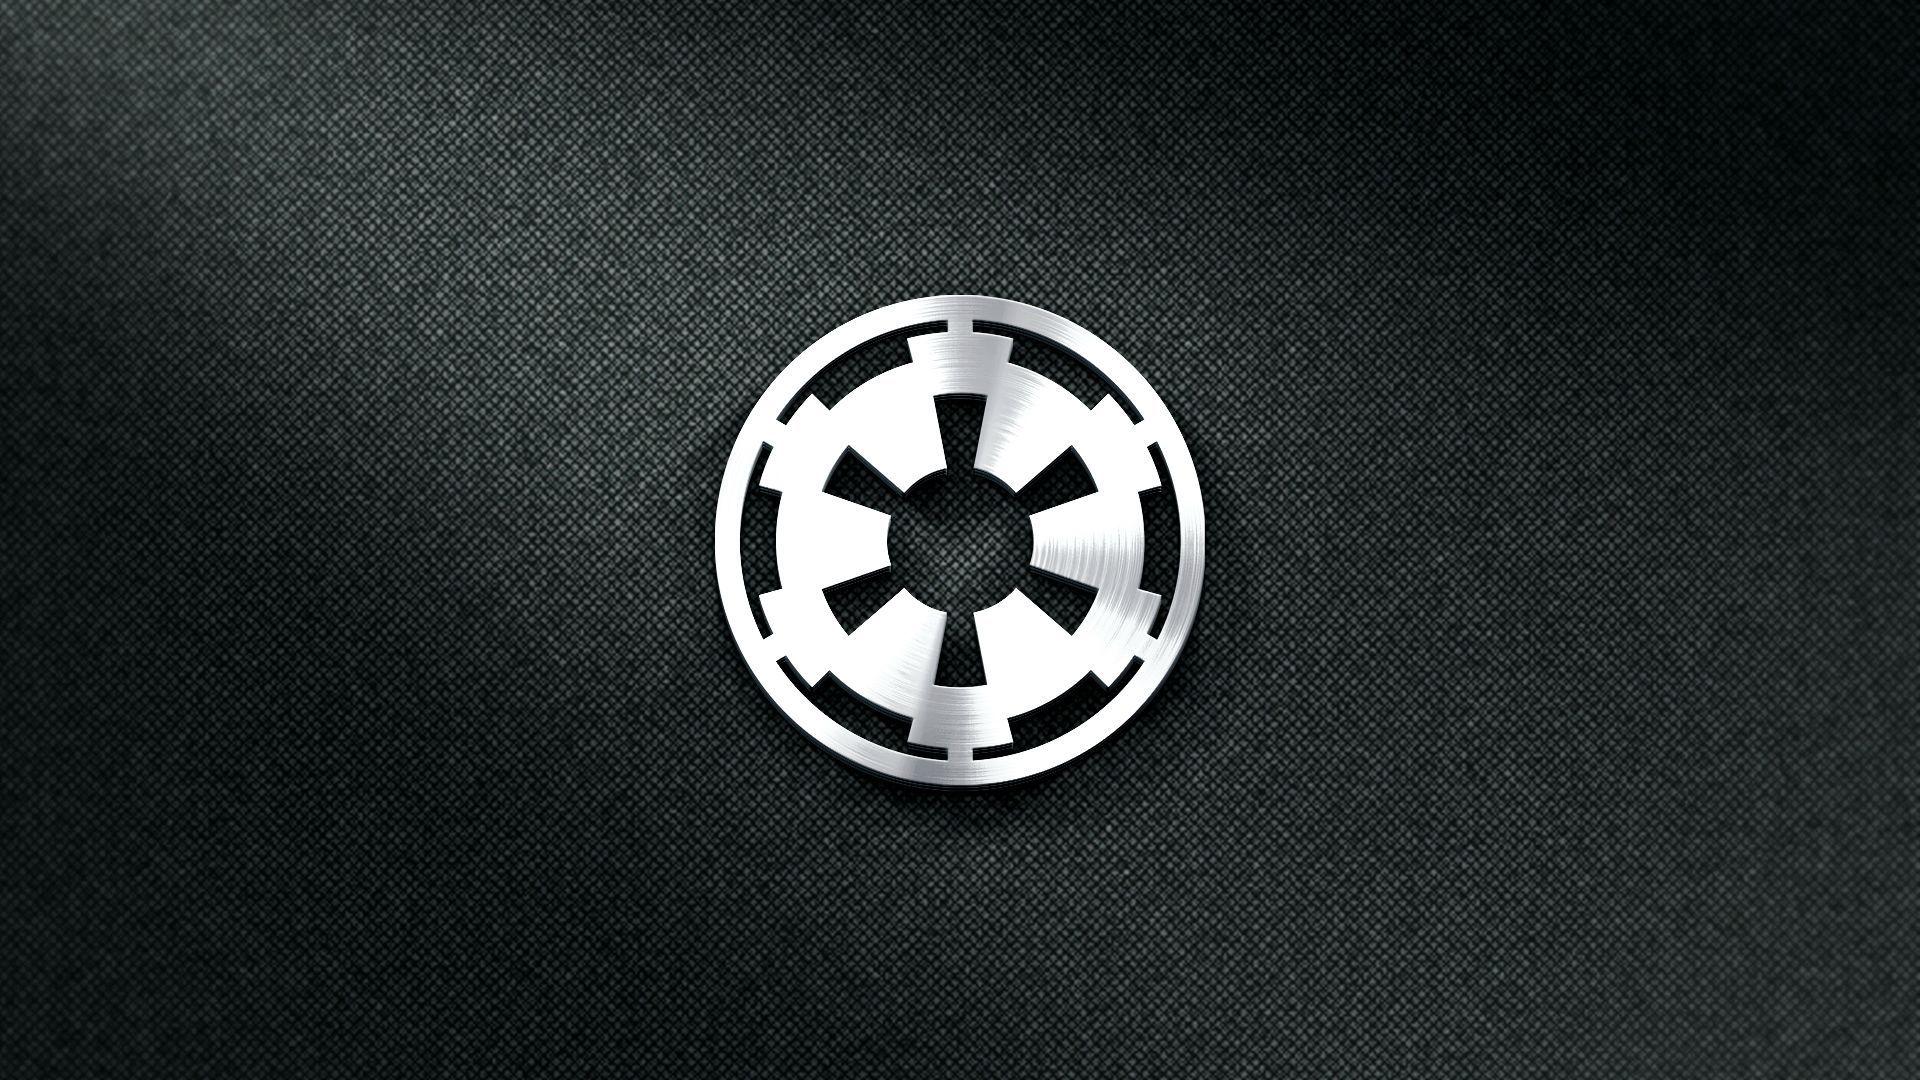 Star Wars Empire Desktop Wallpapers - Top Free Star Wars Empire Desktop